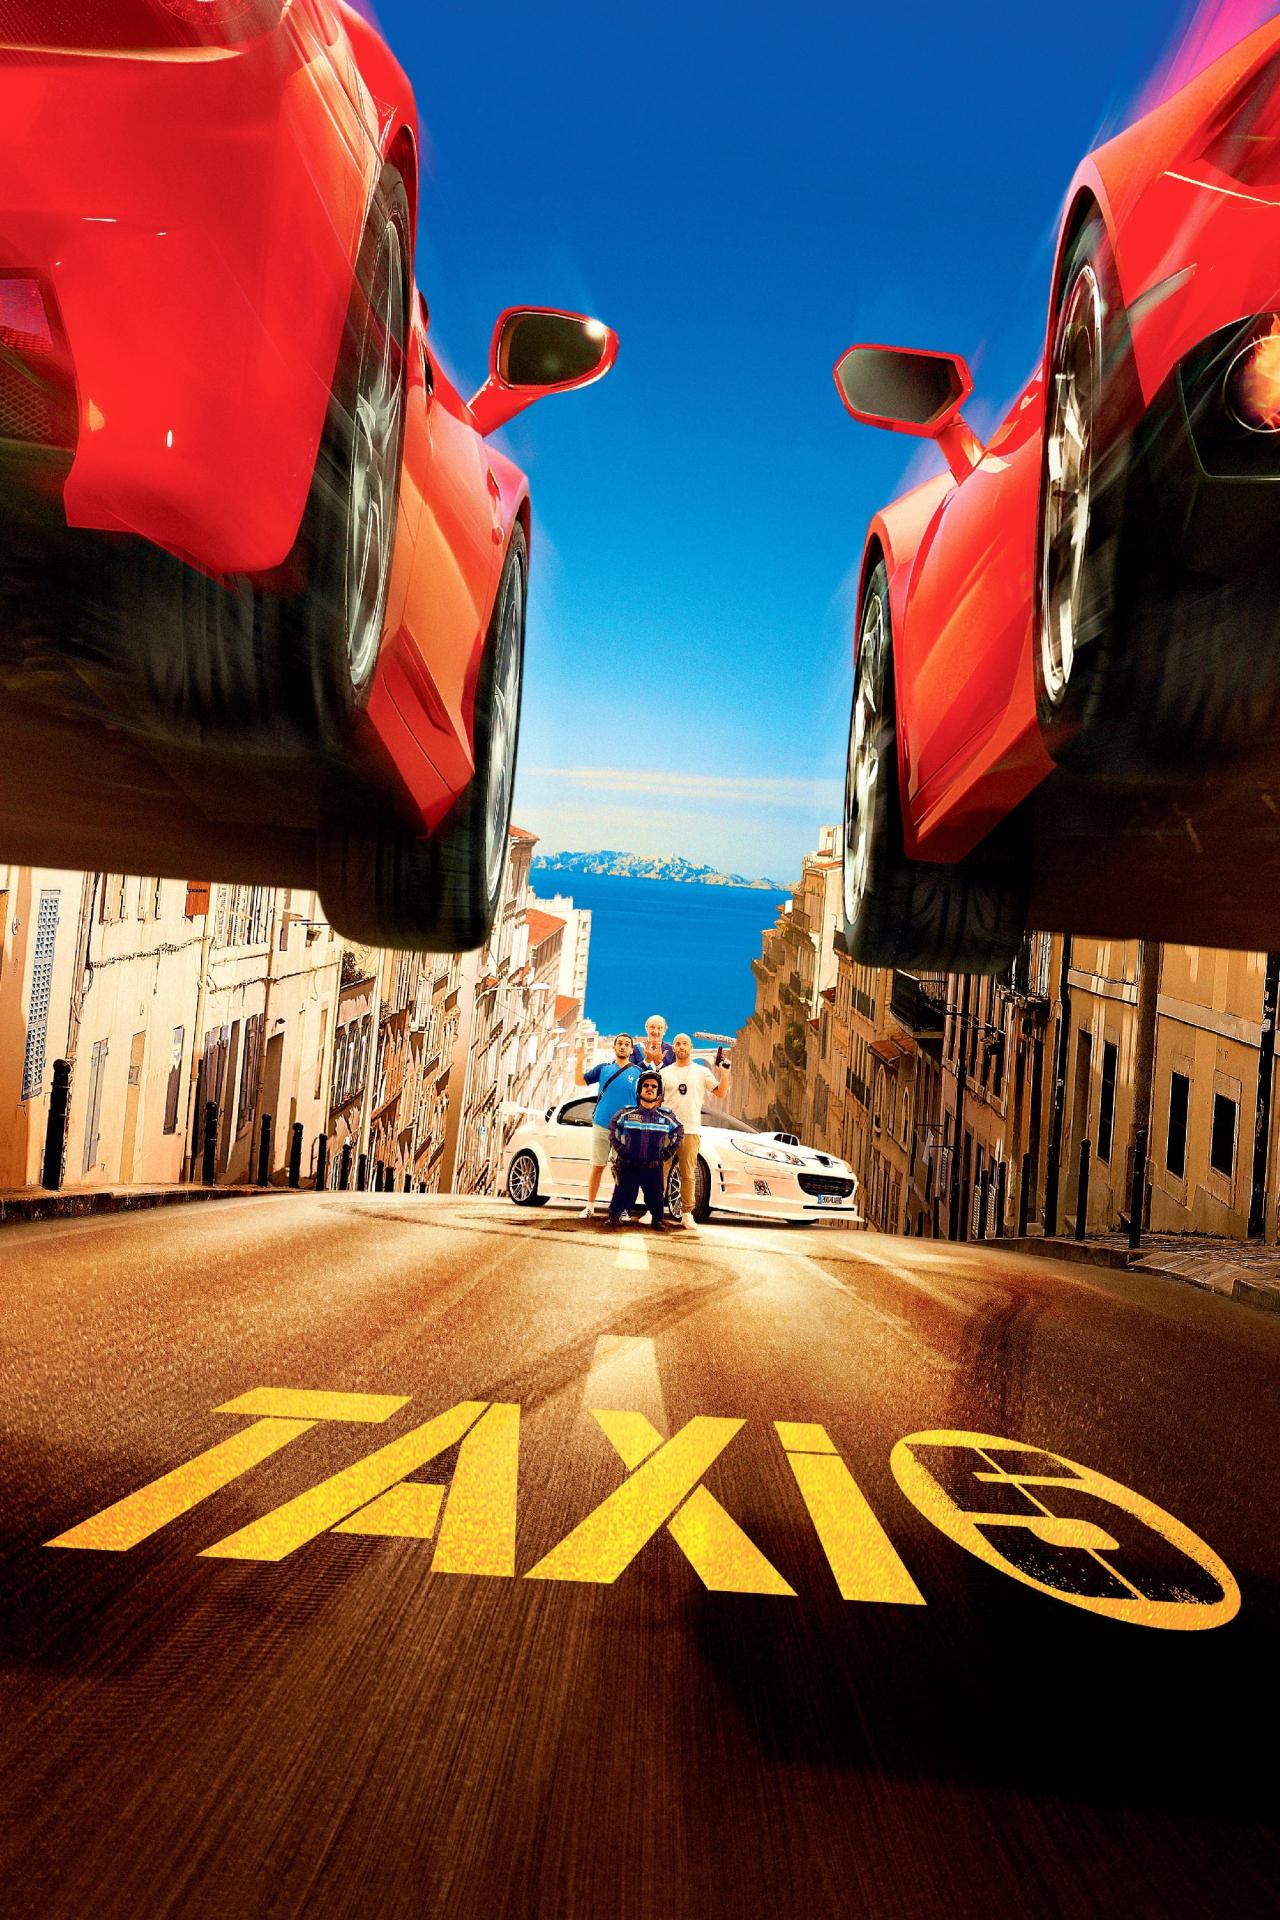 Taxi 5 est-il disponible sur Netflix ou autre ?